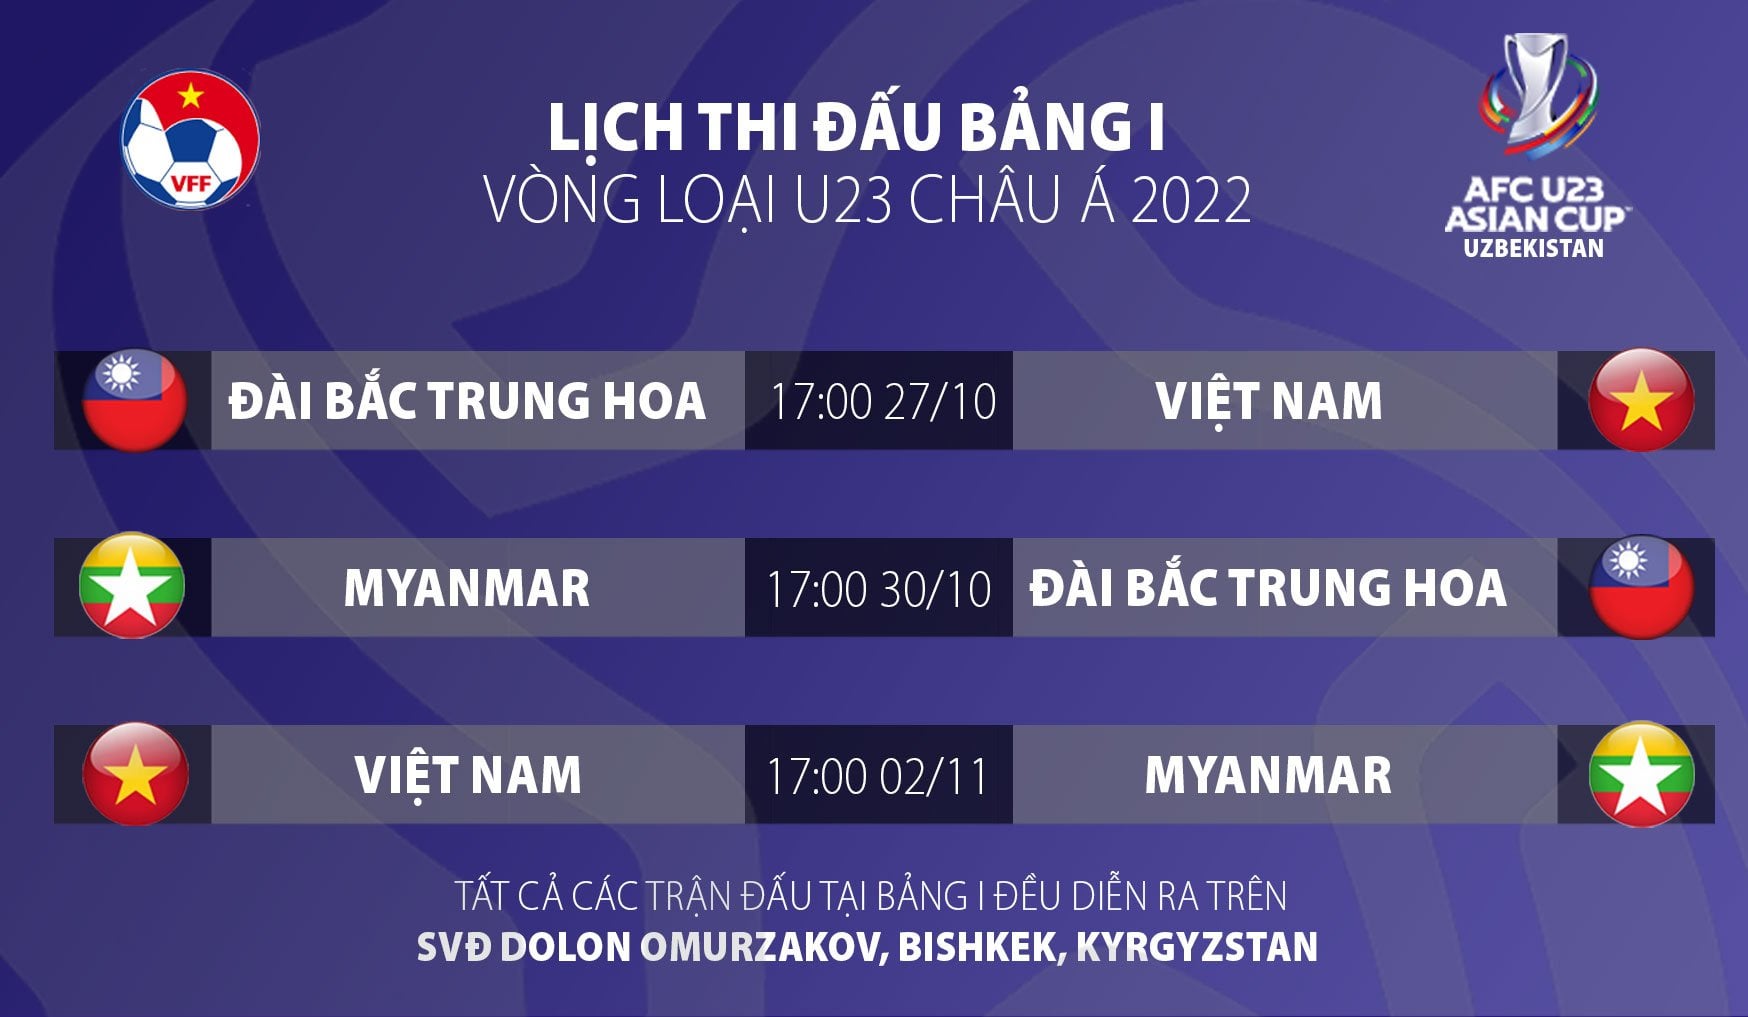 Thắng chật vật 'đội bóng sinh viên', ĐT Việt Nam vẫn thiết lập 2 kỷ lục khủng ở sân chơi châu Á